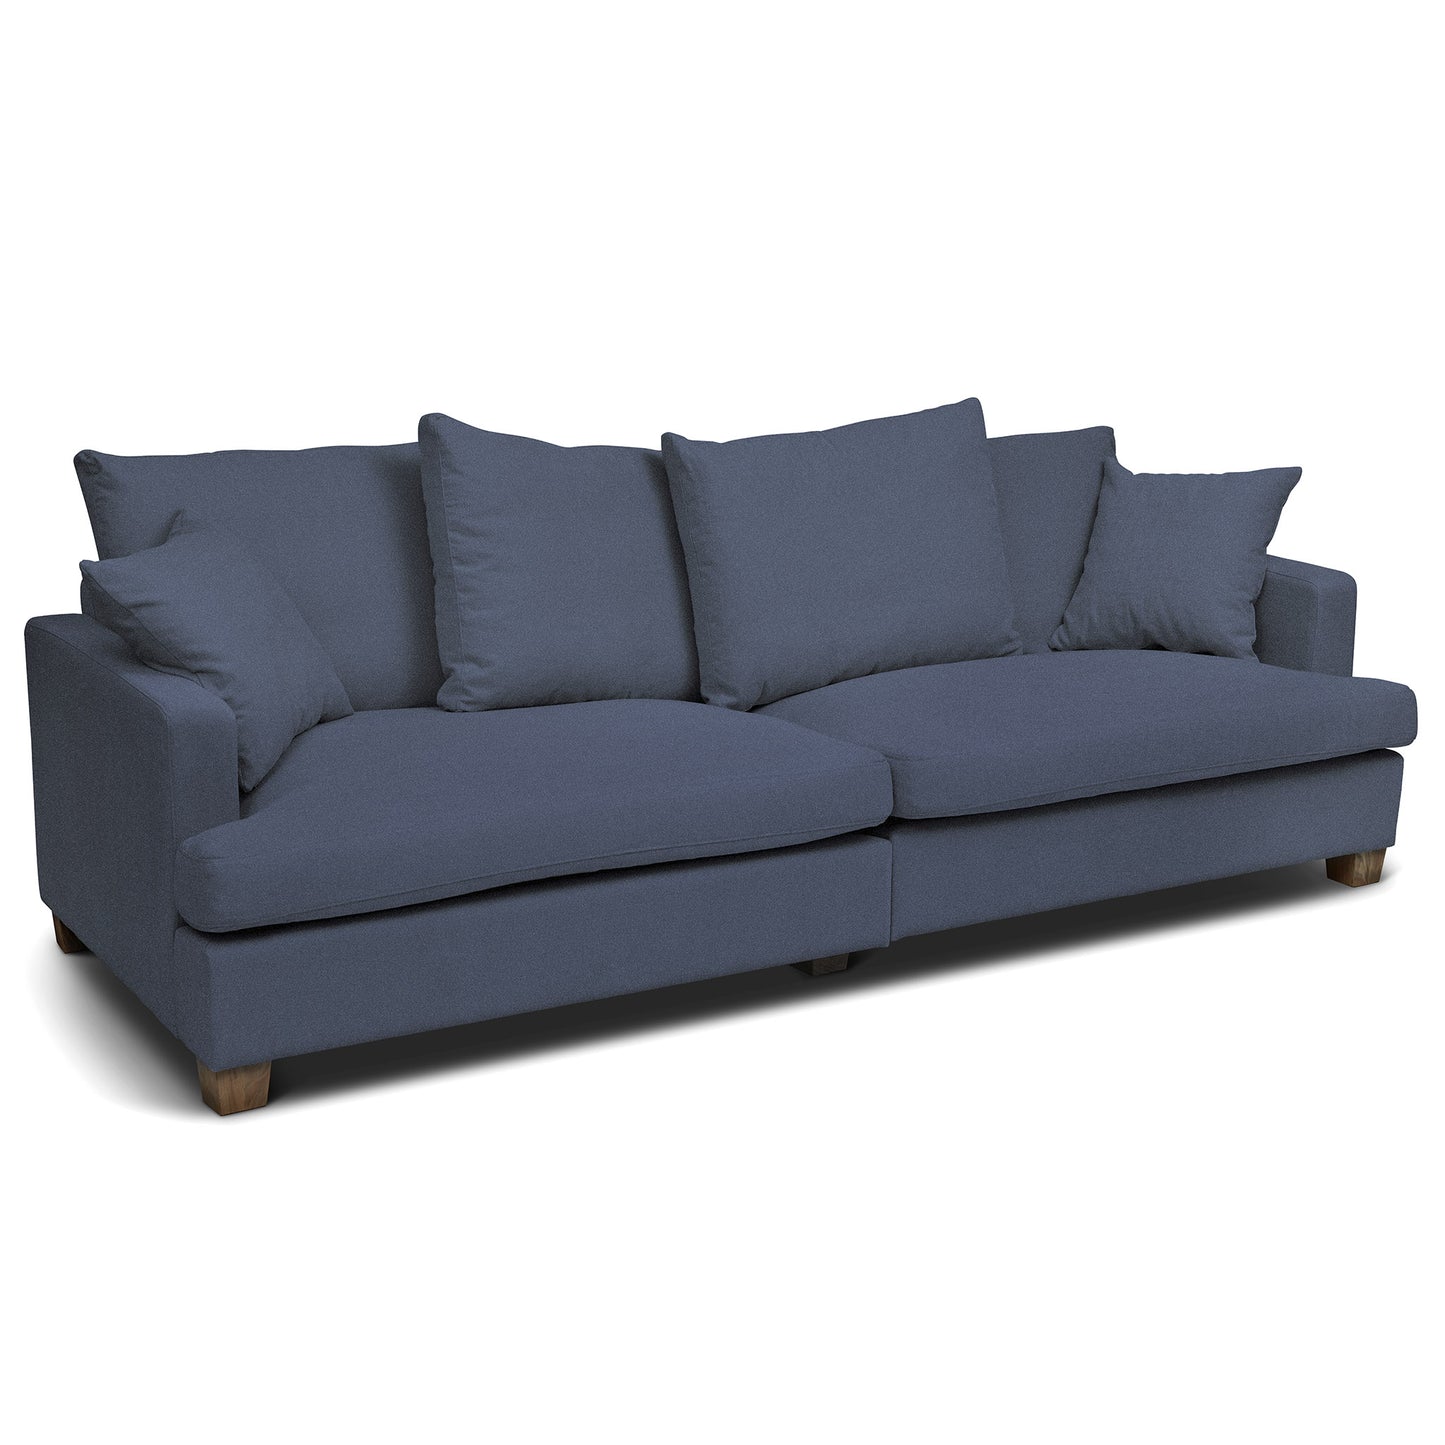 Blå djup soffa som levereras i två delar. Diego är en stor 4-sits soffa